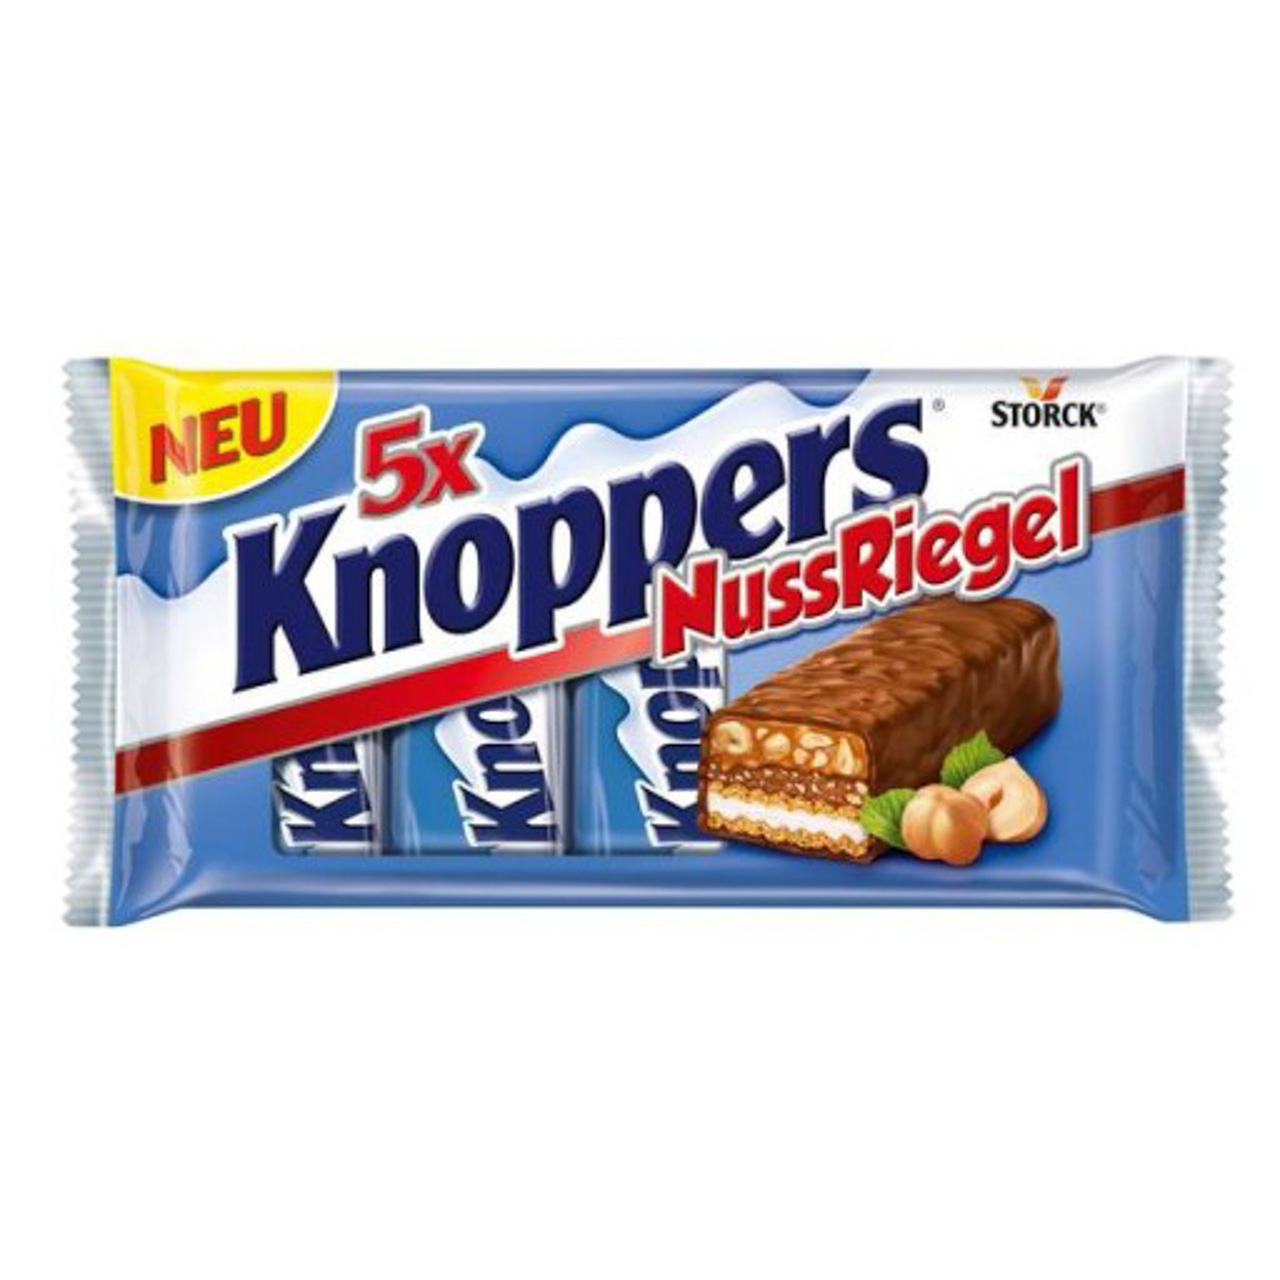 Knoppers. Storck knoppers. Knoppers шоколадки. Немецкие конфеты Storck. Германские конфеты knoppers.